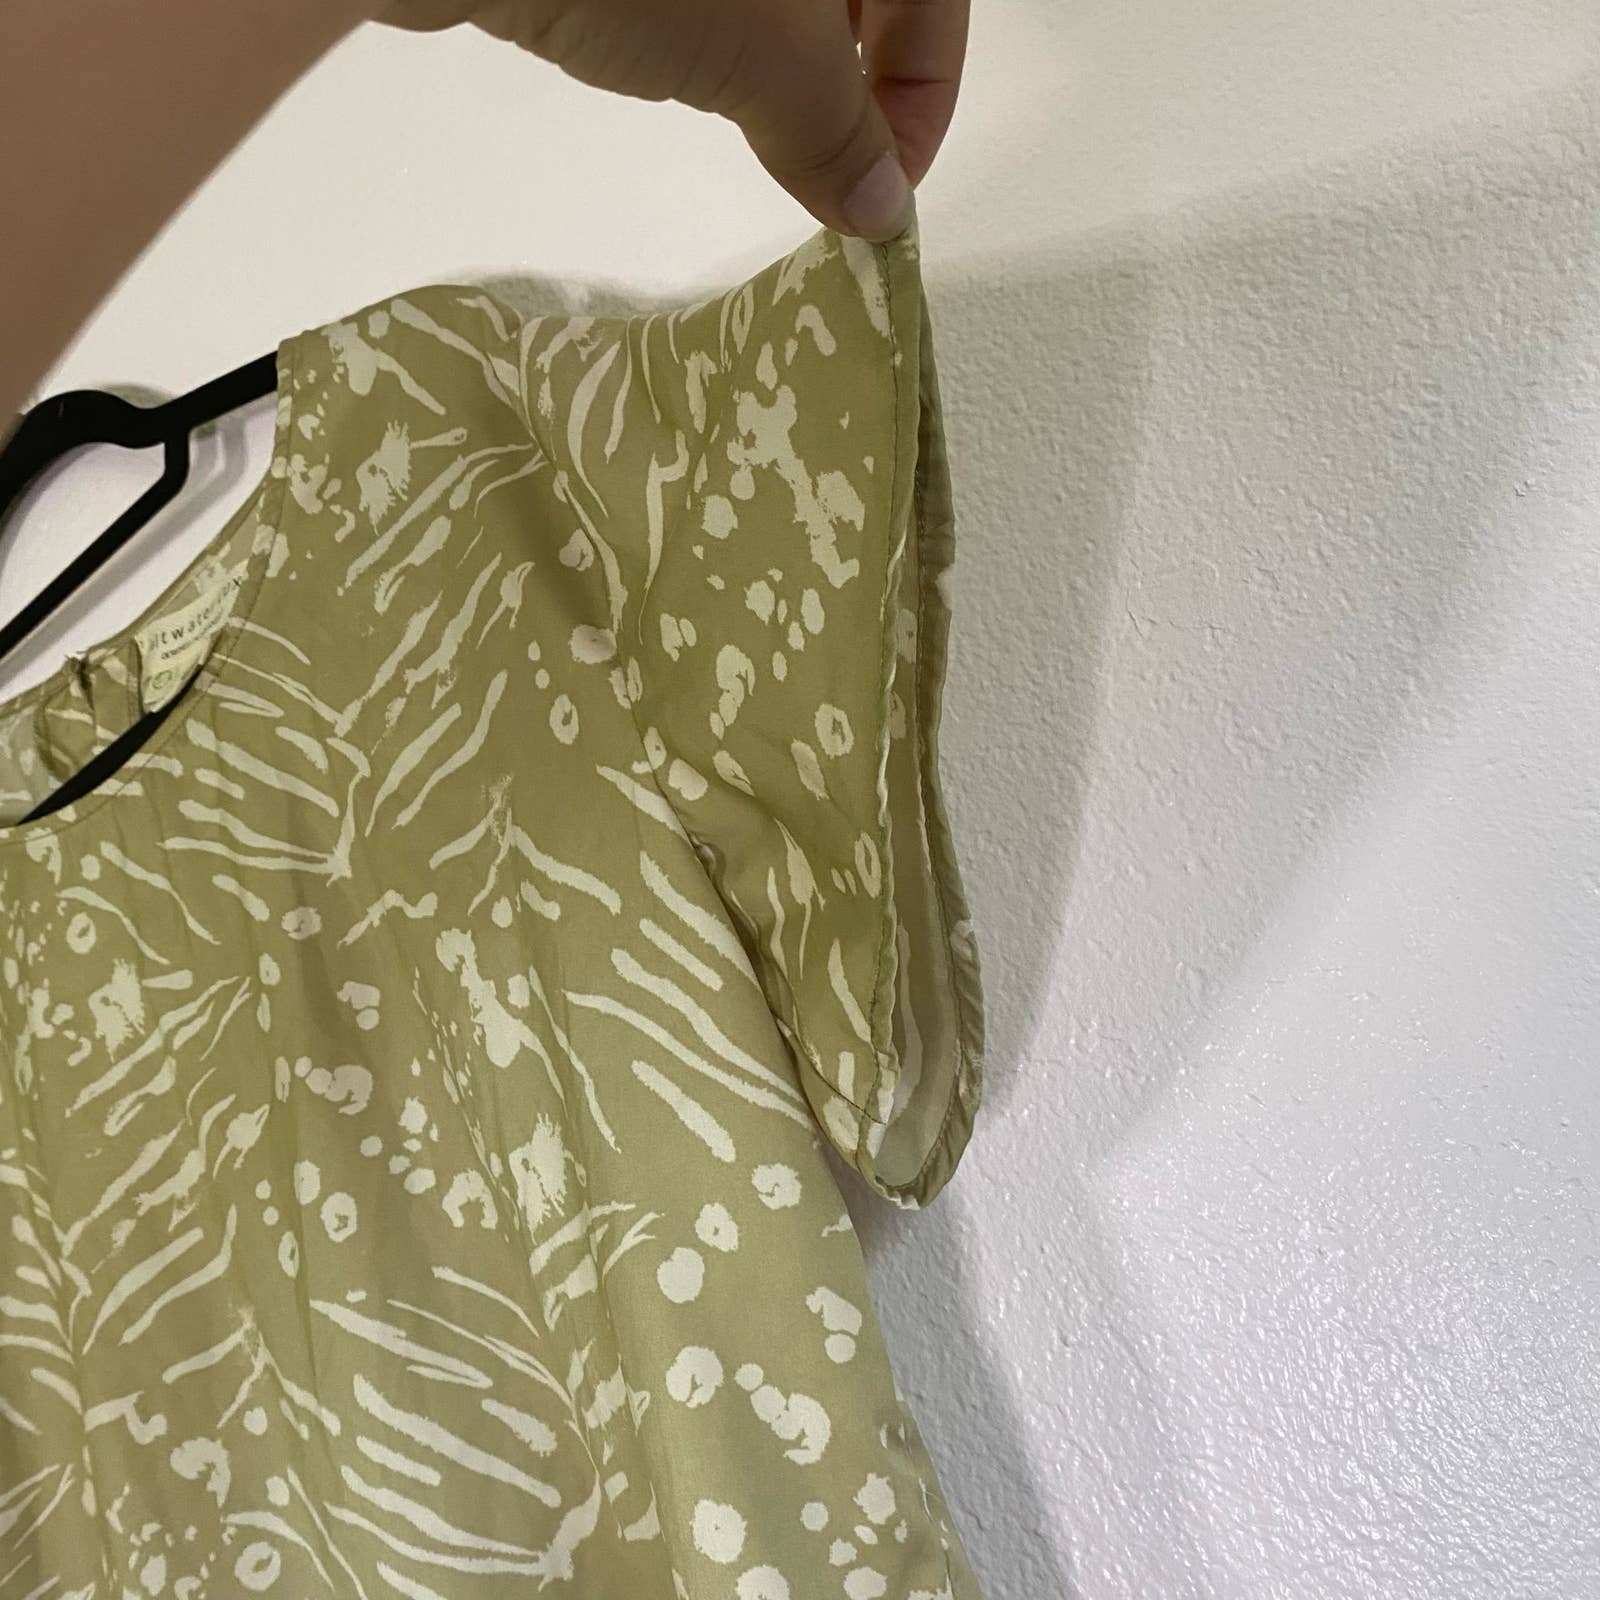 floor price Saltwater Luxe Green Top Shirt Women Size M NyvIt5CA5 online store